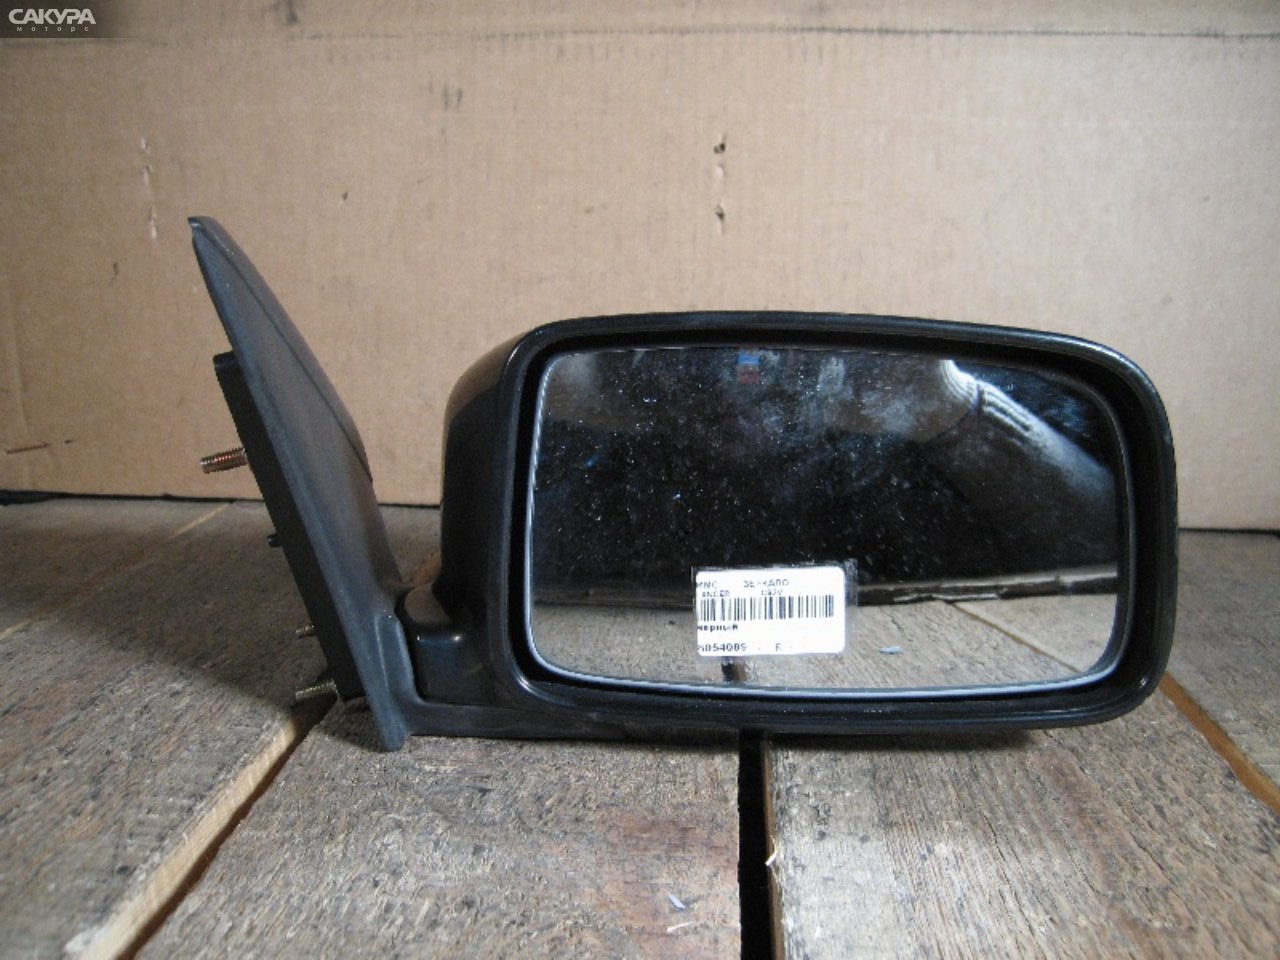 Зеркало боковое правое Mitsubishi Lancer Cedia CS2A: купить в Сакура Абакан.